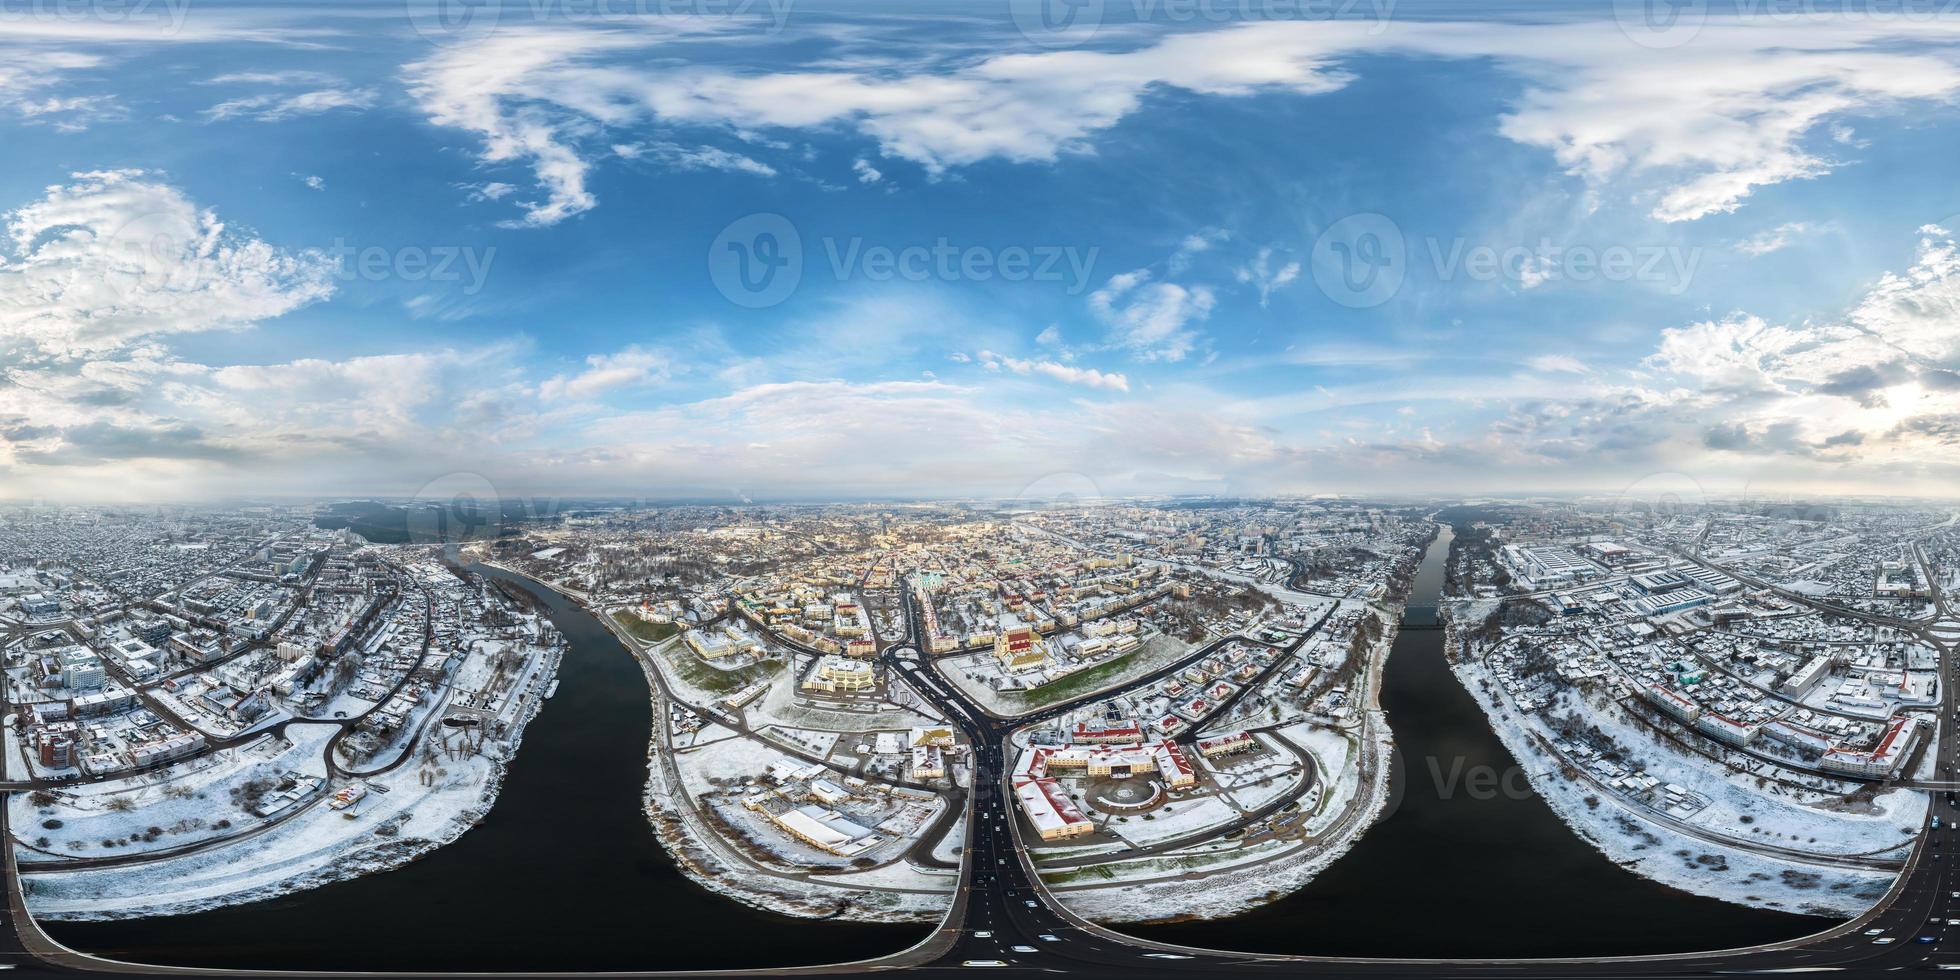 vue panoramique aérienne complète et sphérique d'hiver 360 hdri surplombant la vieille ville, le développement urbain, les bâtiments historiques, le carrefour avec un pont sur la large rivière en projection équirectangulaire photo